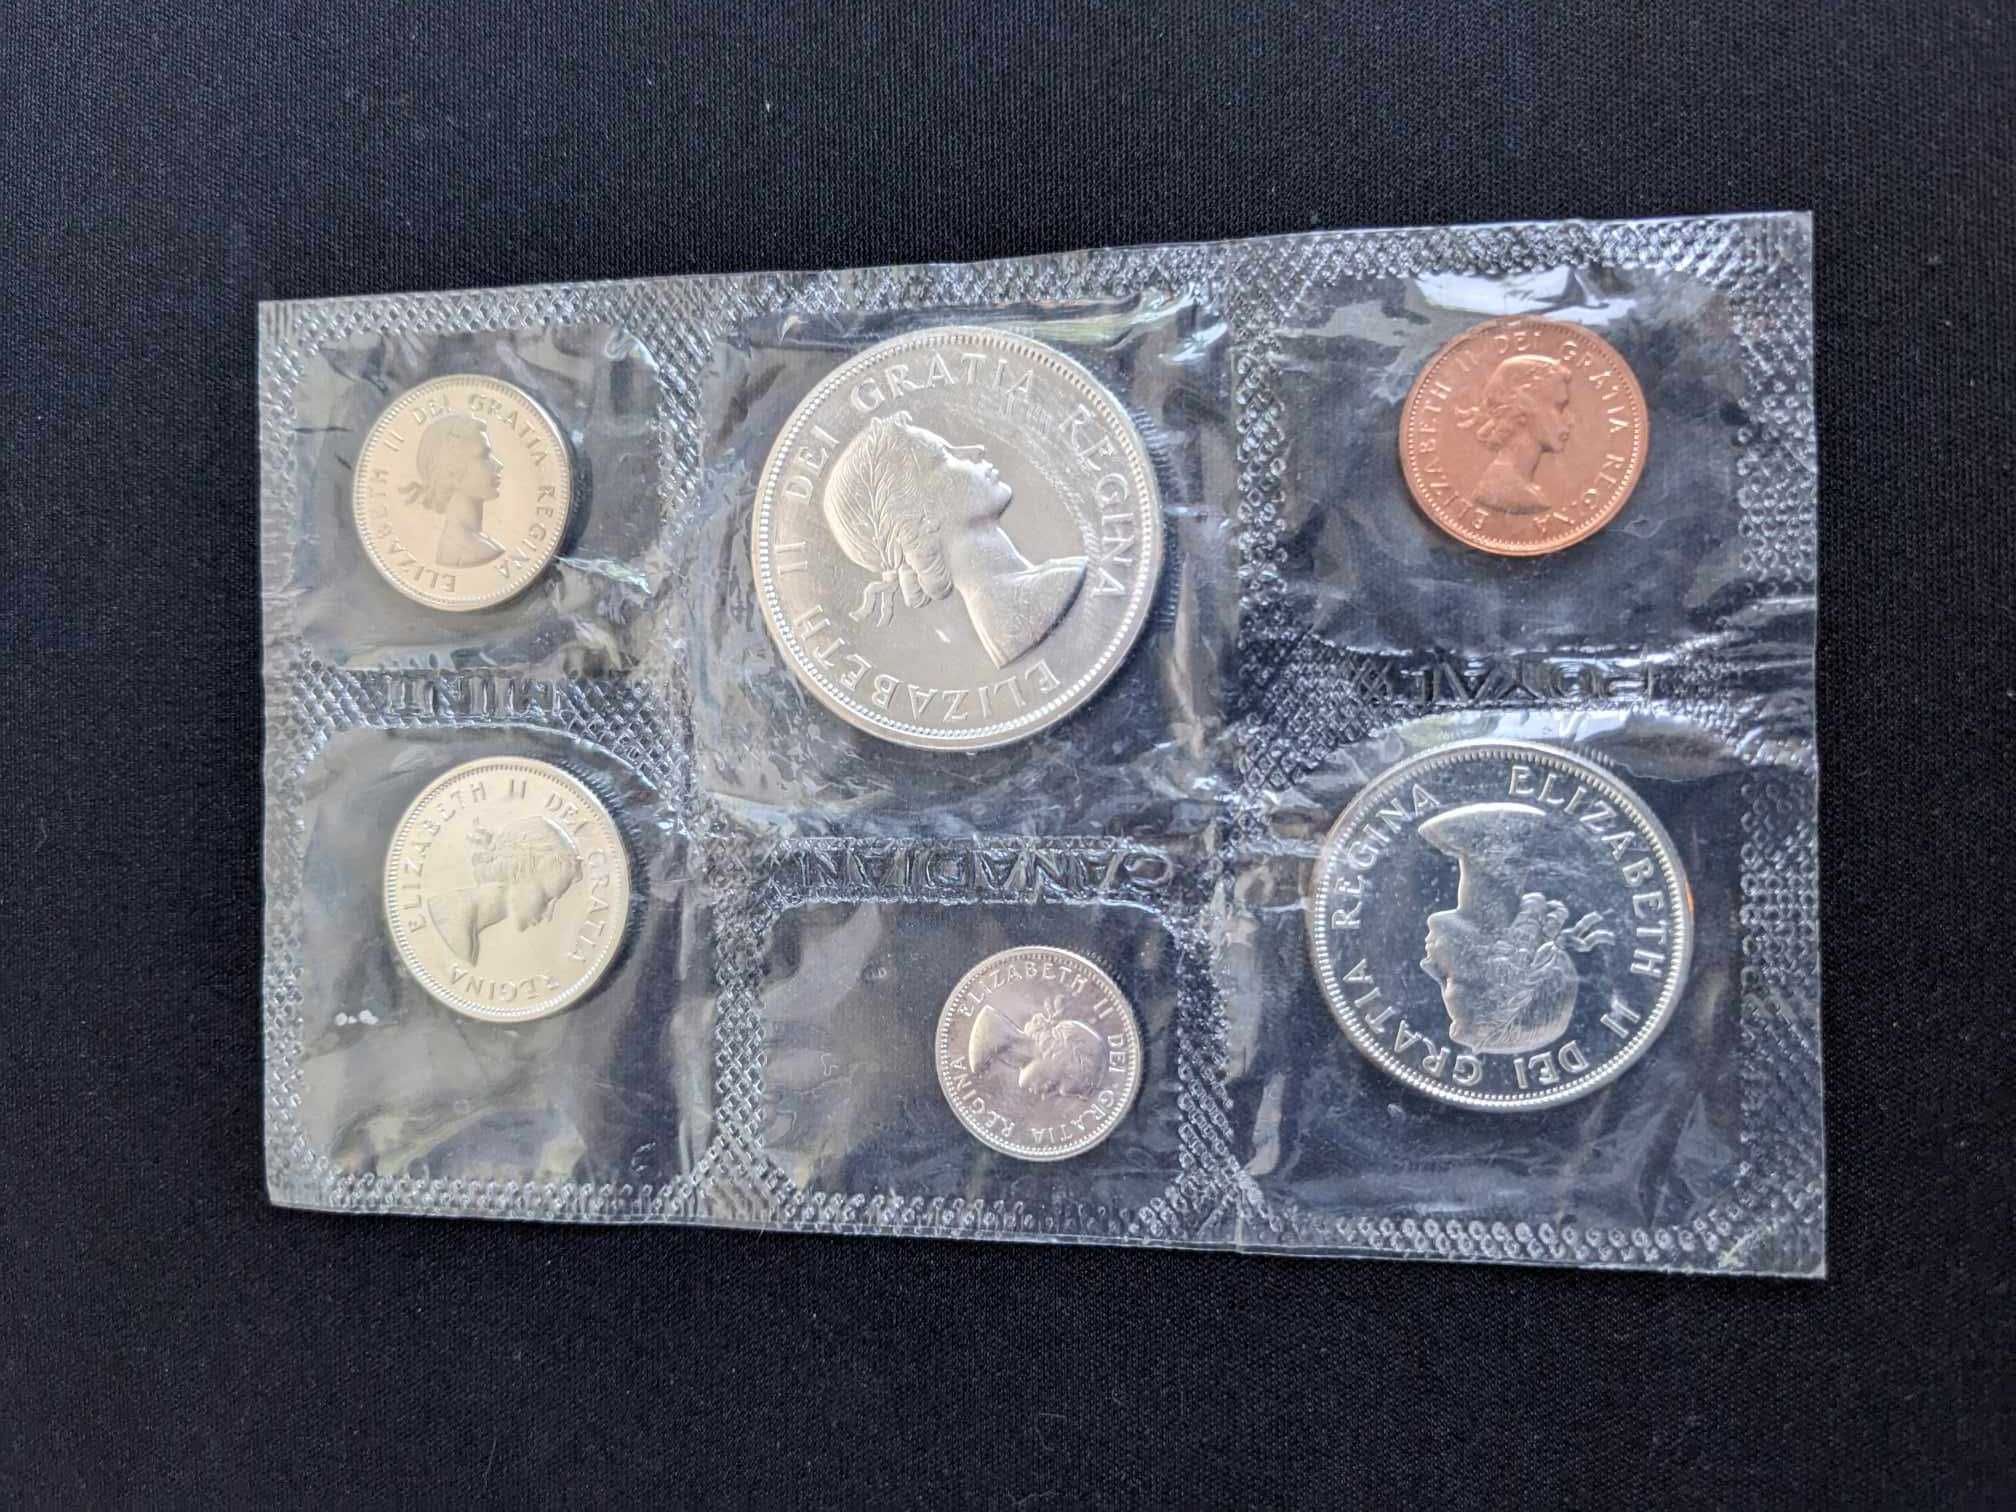 Srebrne monety Kanada - set menniczy 1963, 1967 dolary